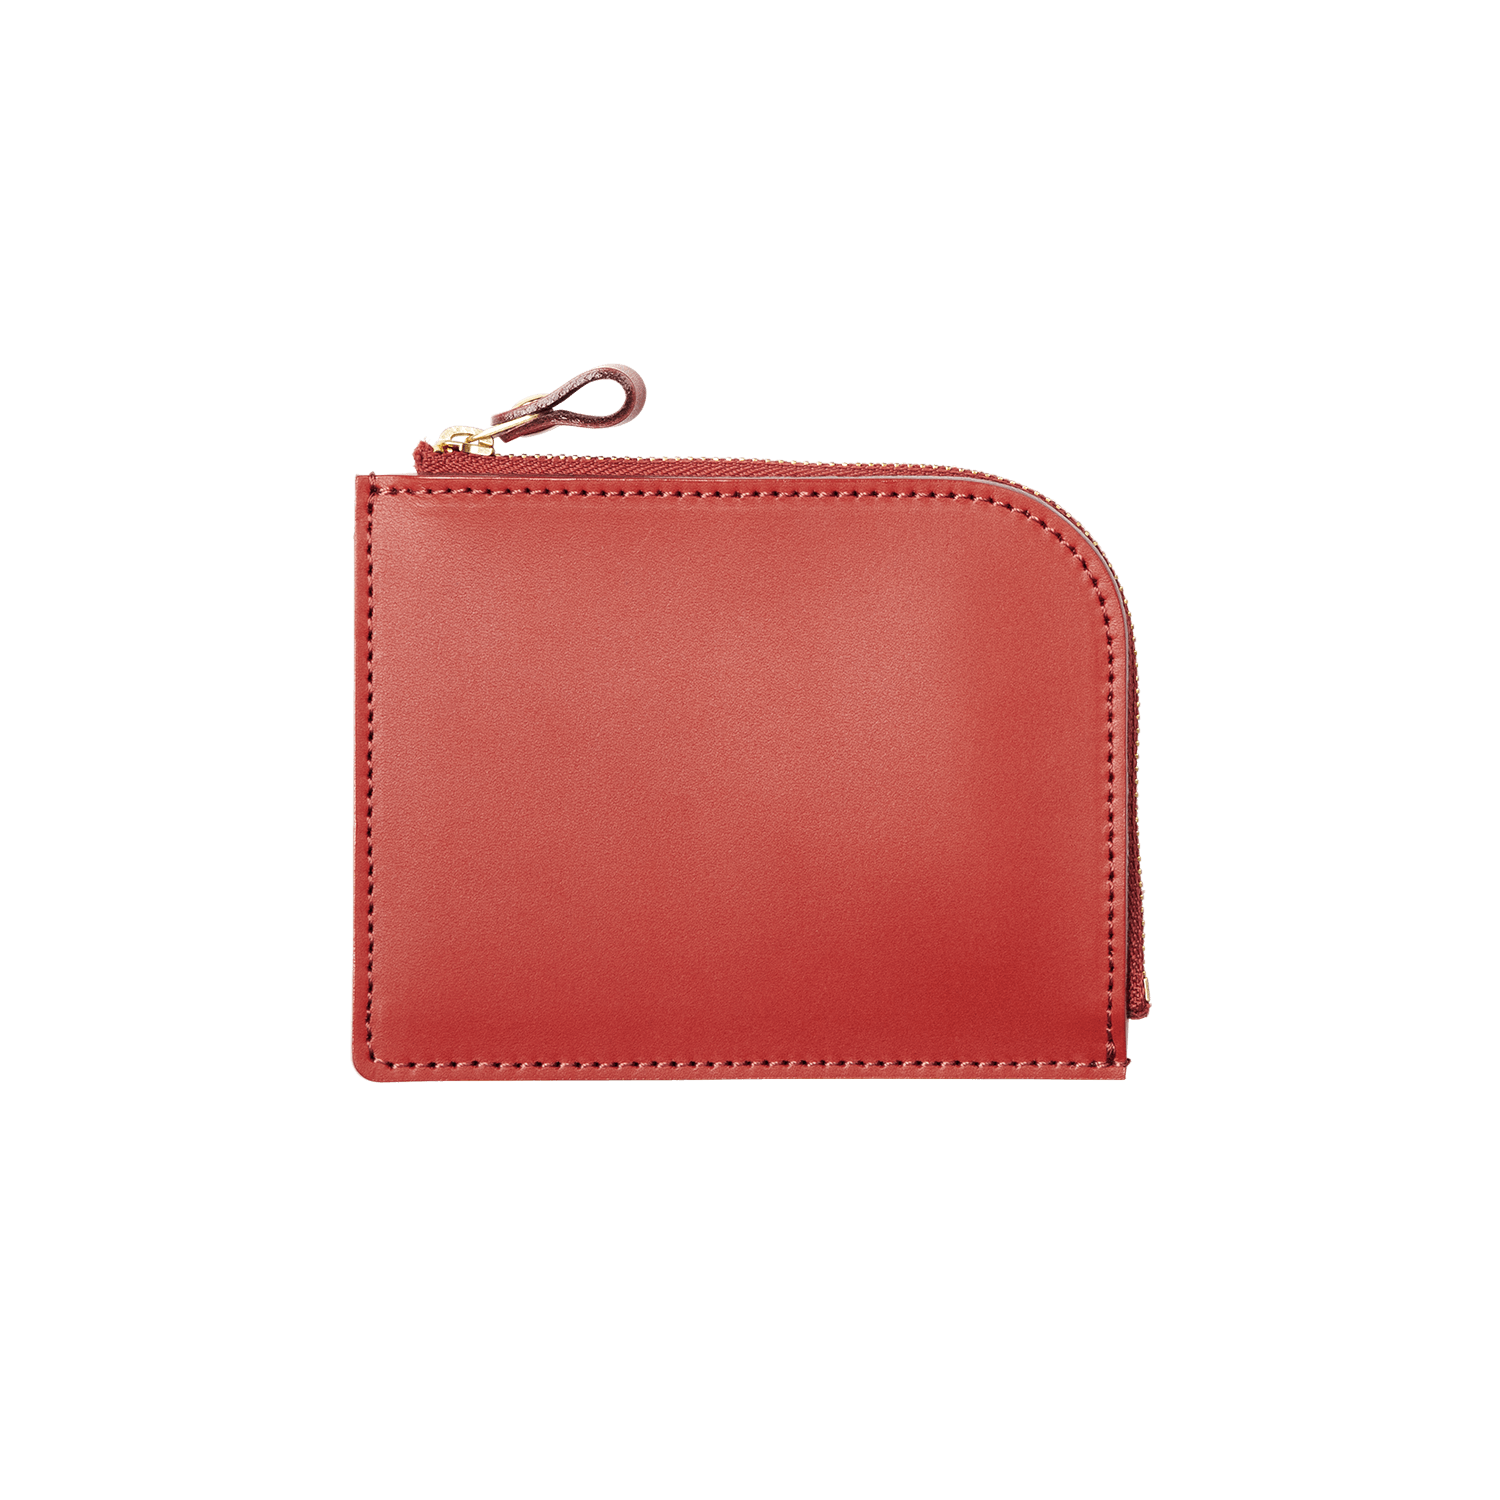 機能やスタイルで選ぶ シンプル財布「Lファスナー」 – 土屋鞄製造所